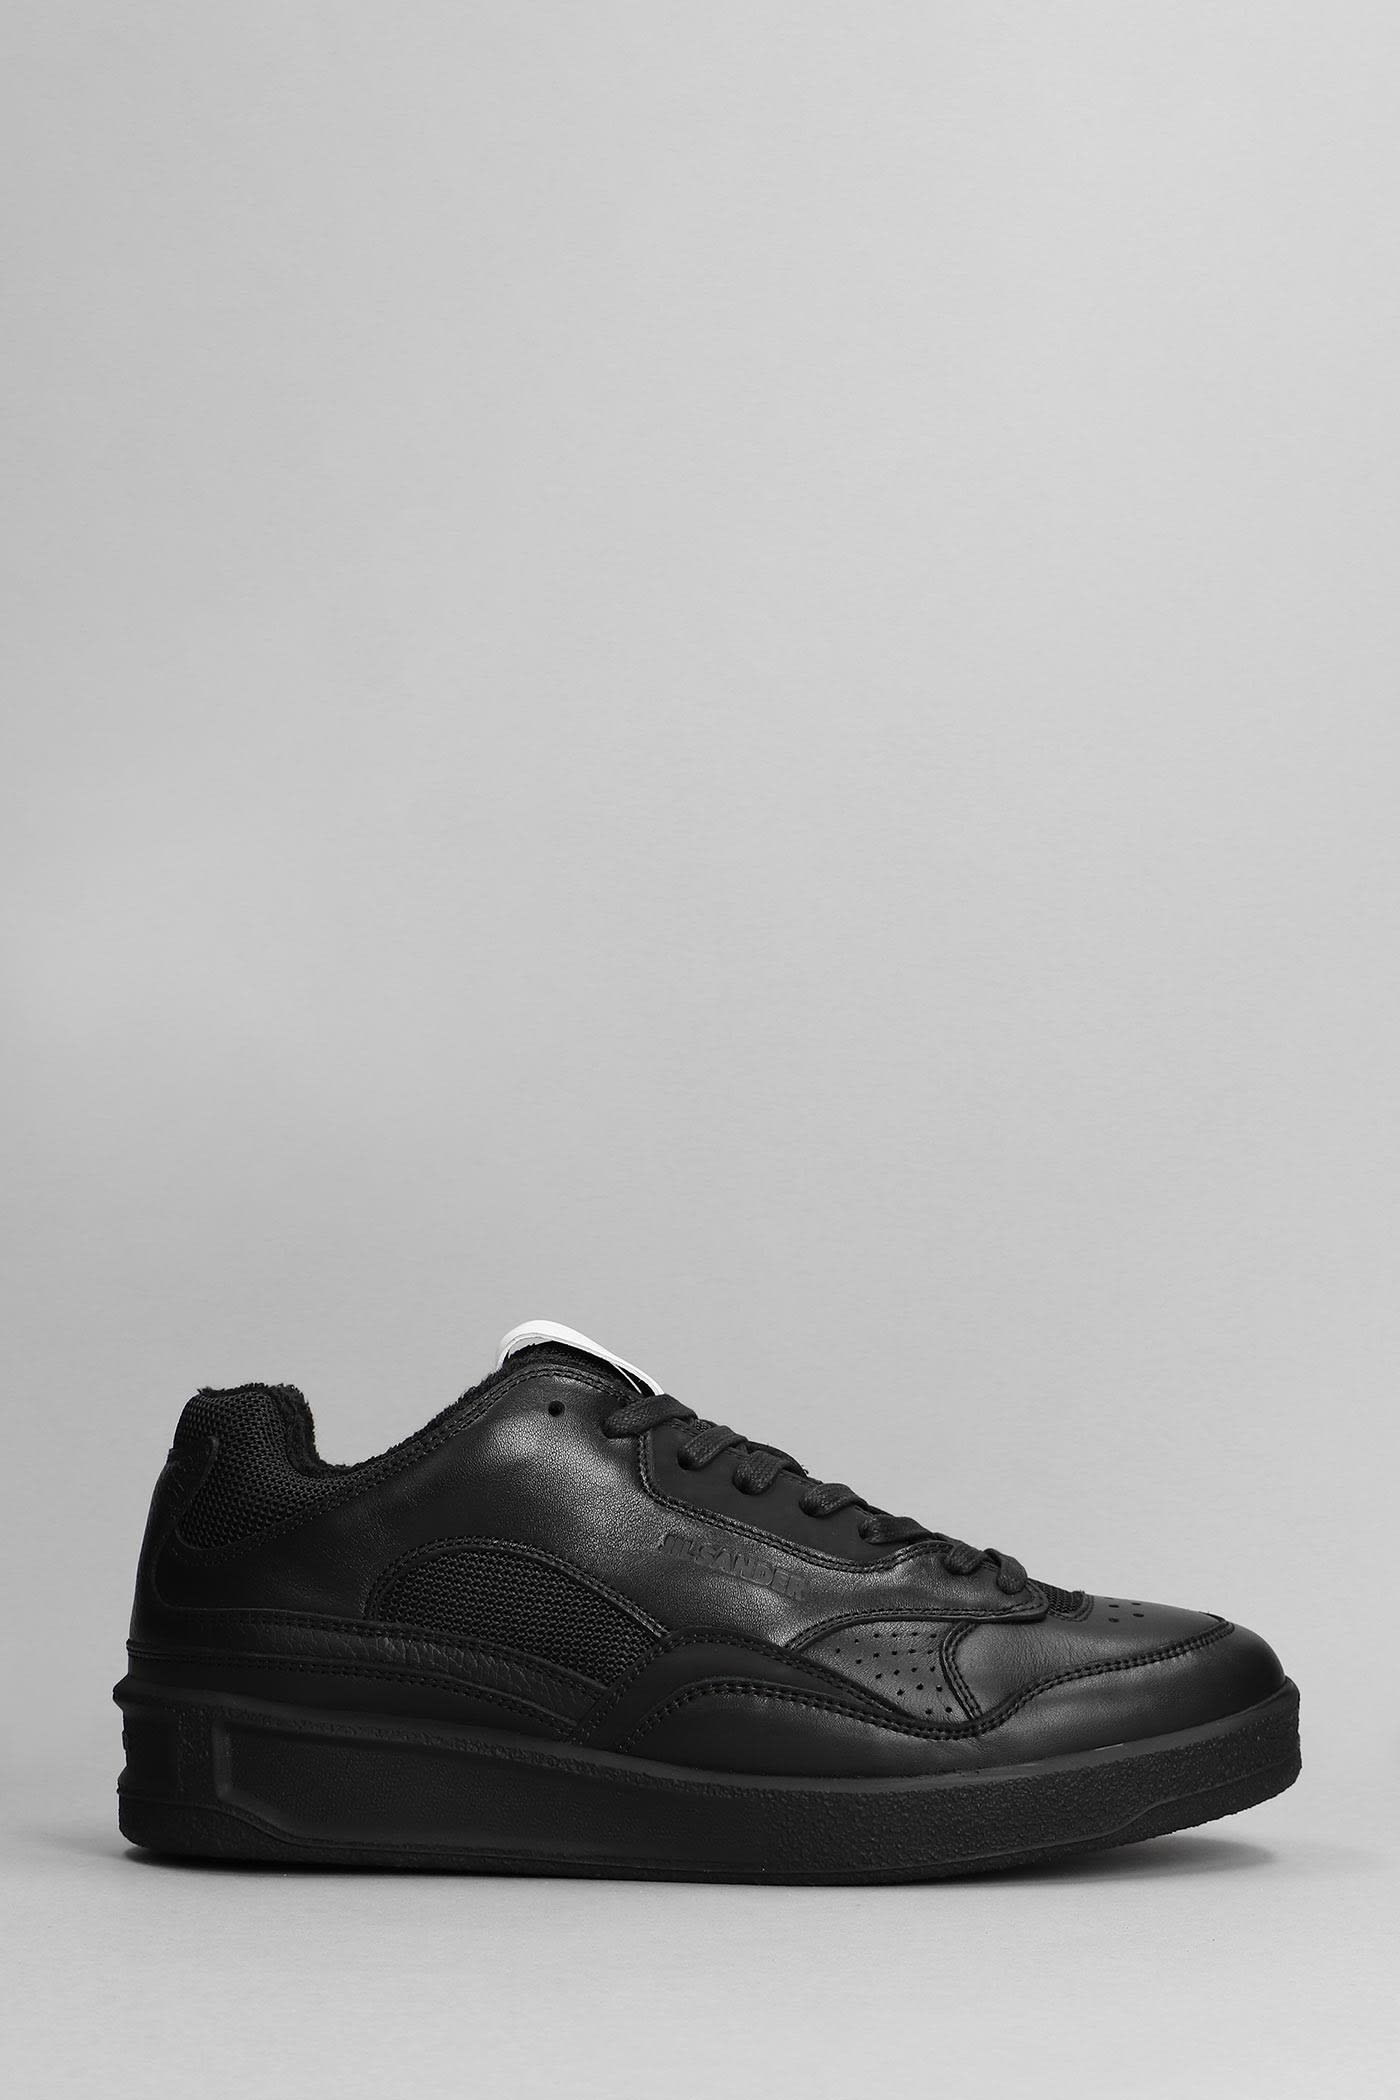 Jil Sander Sneakers In Black Leather